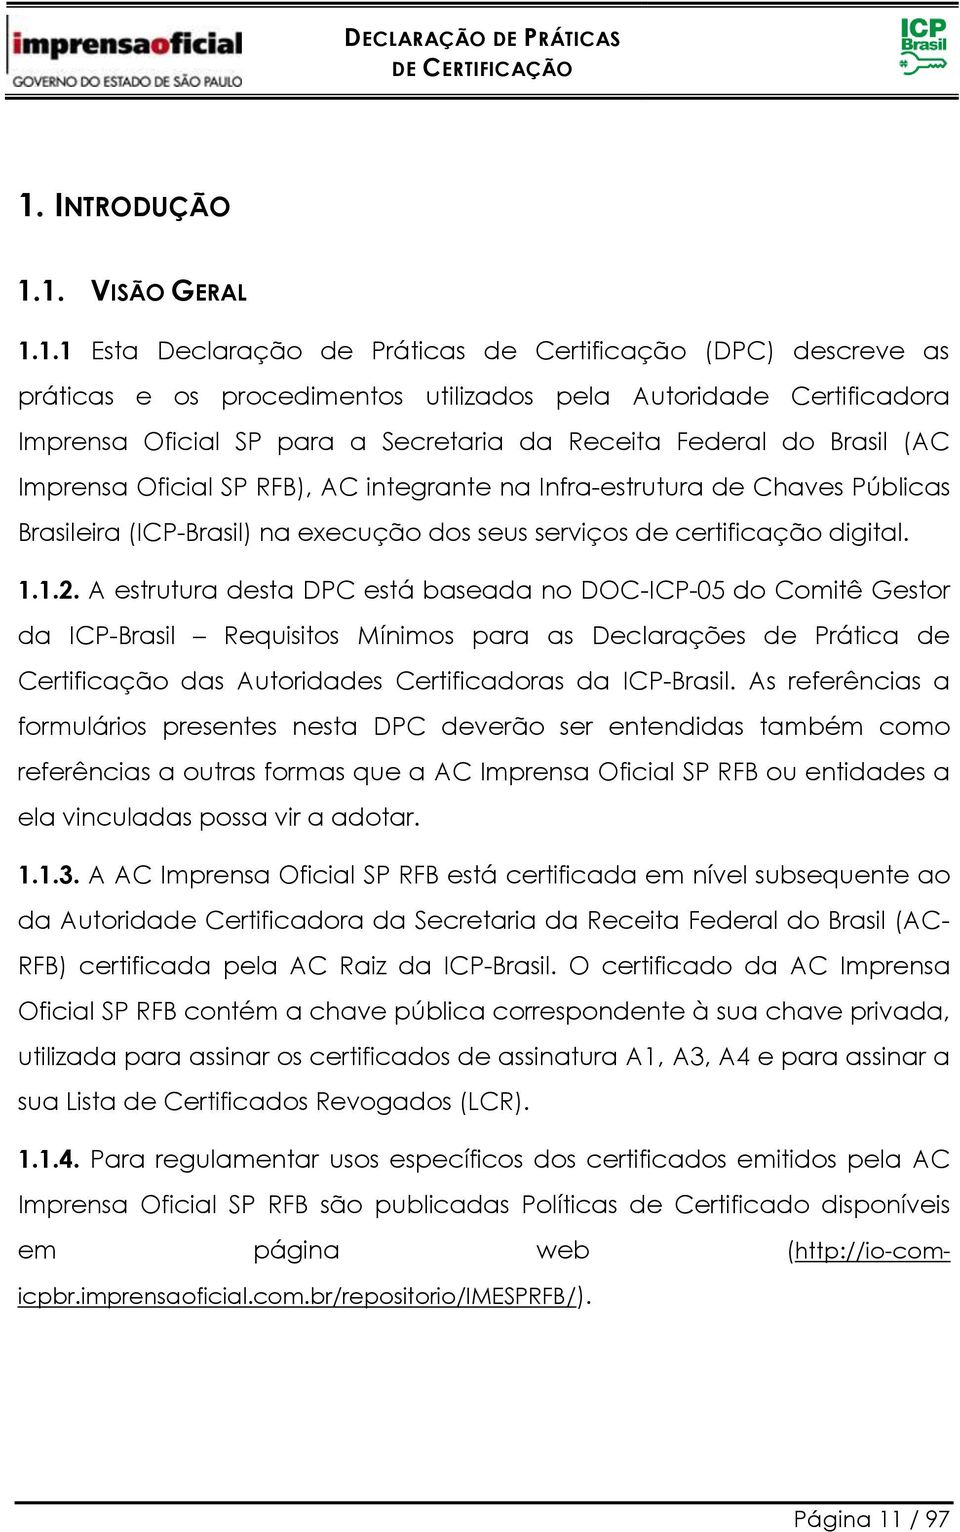 1.1.2. A estrutura desta DPC está baseada no DOC-ICP-05 do Comitê Gestor da ICP-Brasil Requisitos Mínimos para as Declarações de Prática de Certificação das Autoridades Certificadoras da ICP-Brasil.